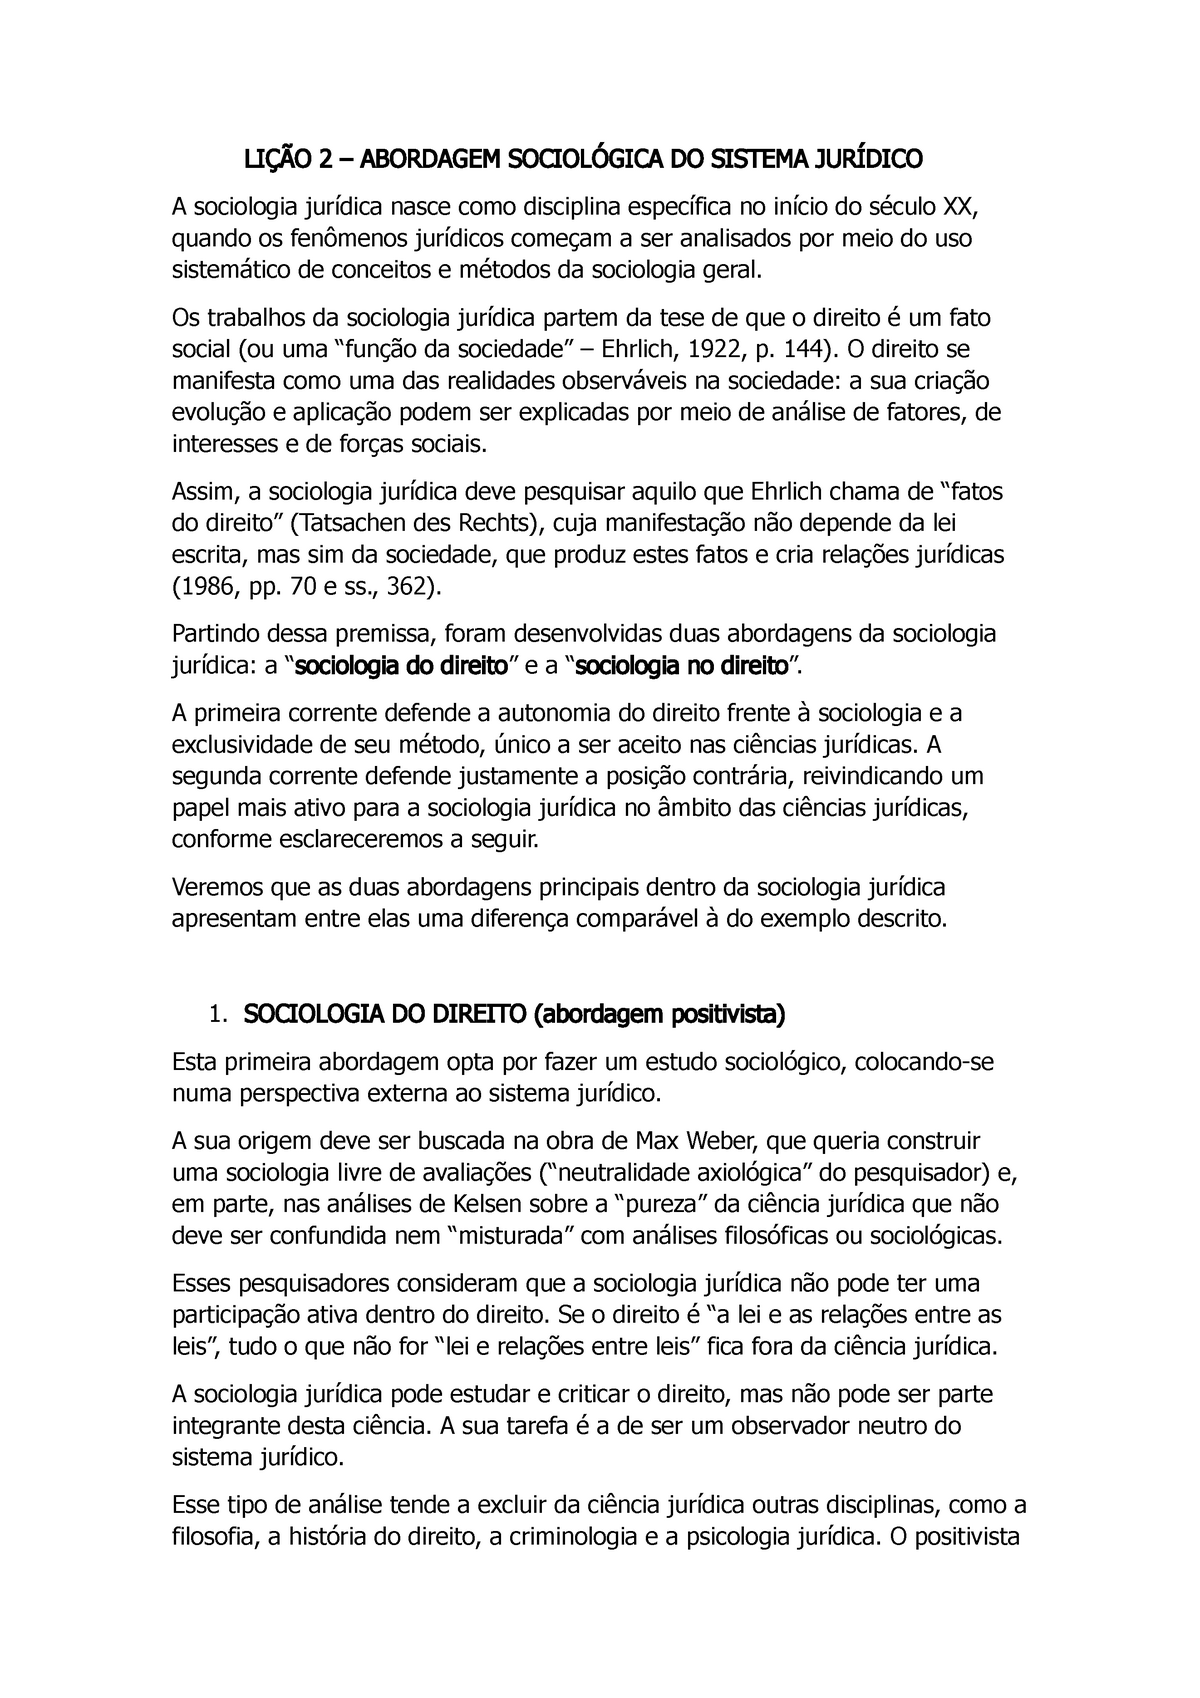 Resumo Lição 03 Manual De Sociologia Jurídica Ana Lucia Sabadell 2 Abordagem Do Sistema A 3688